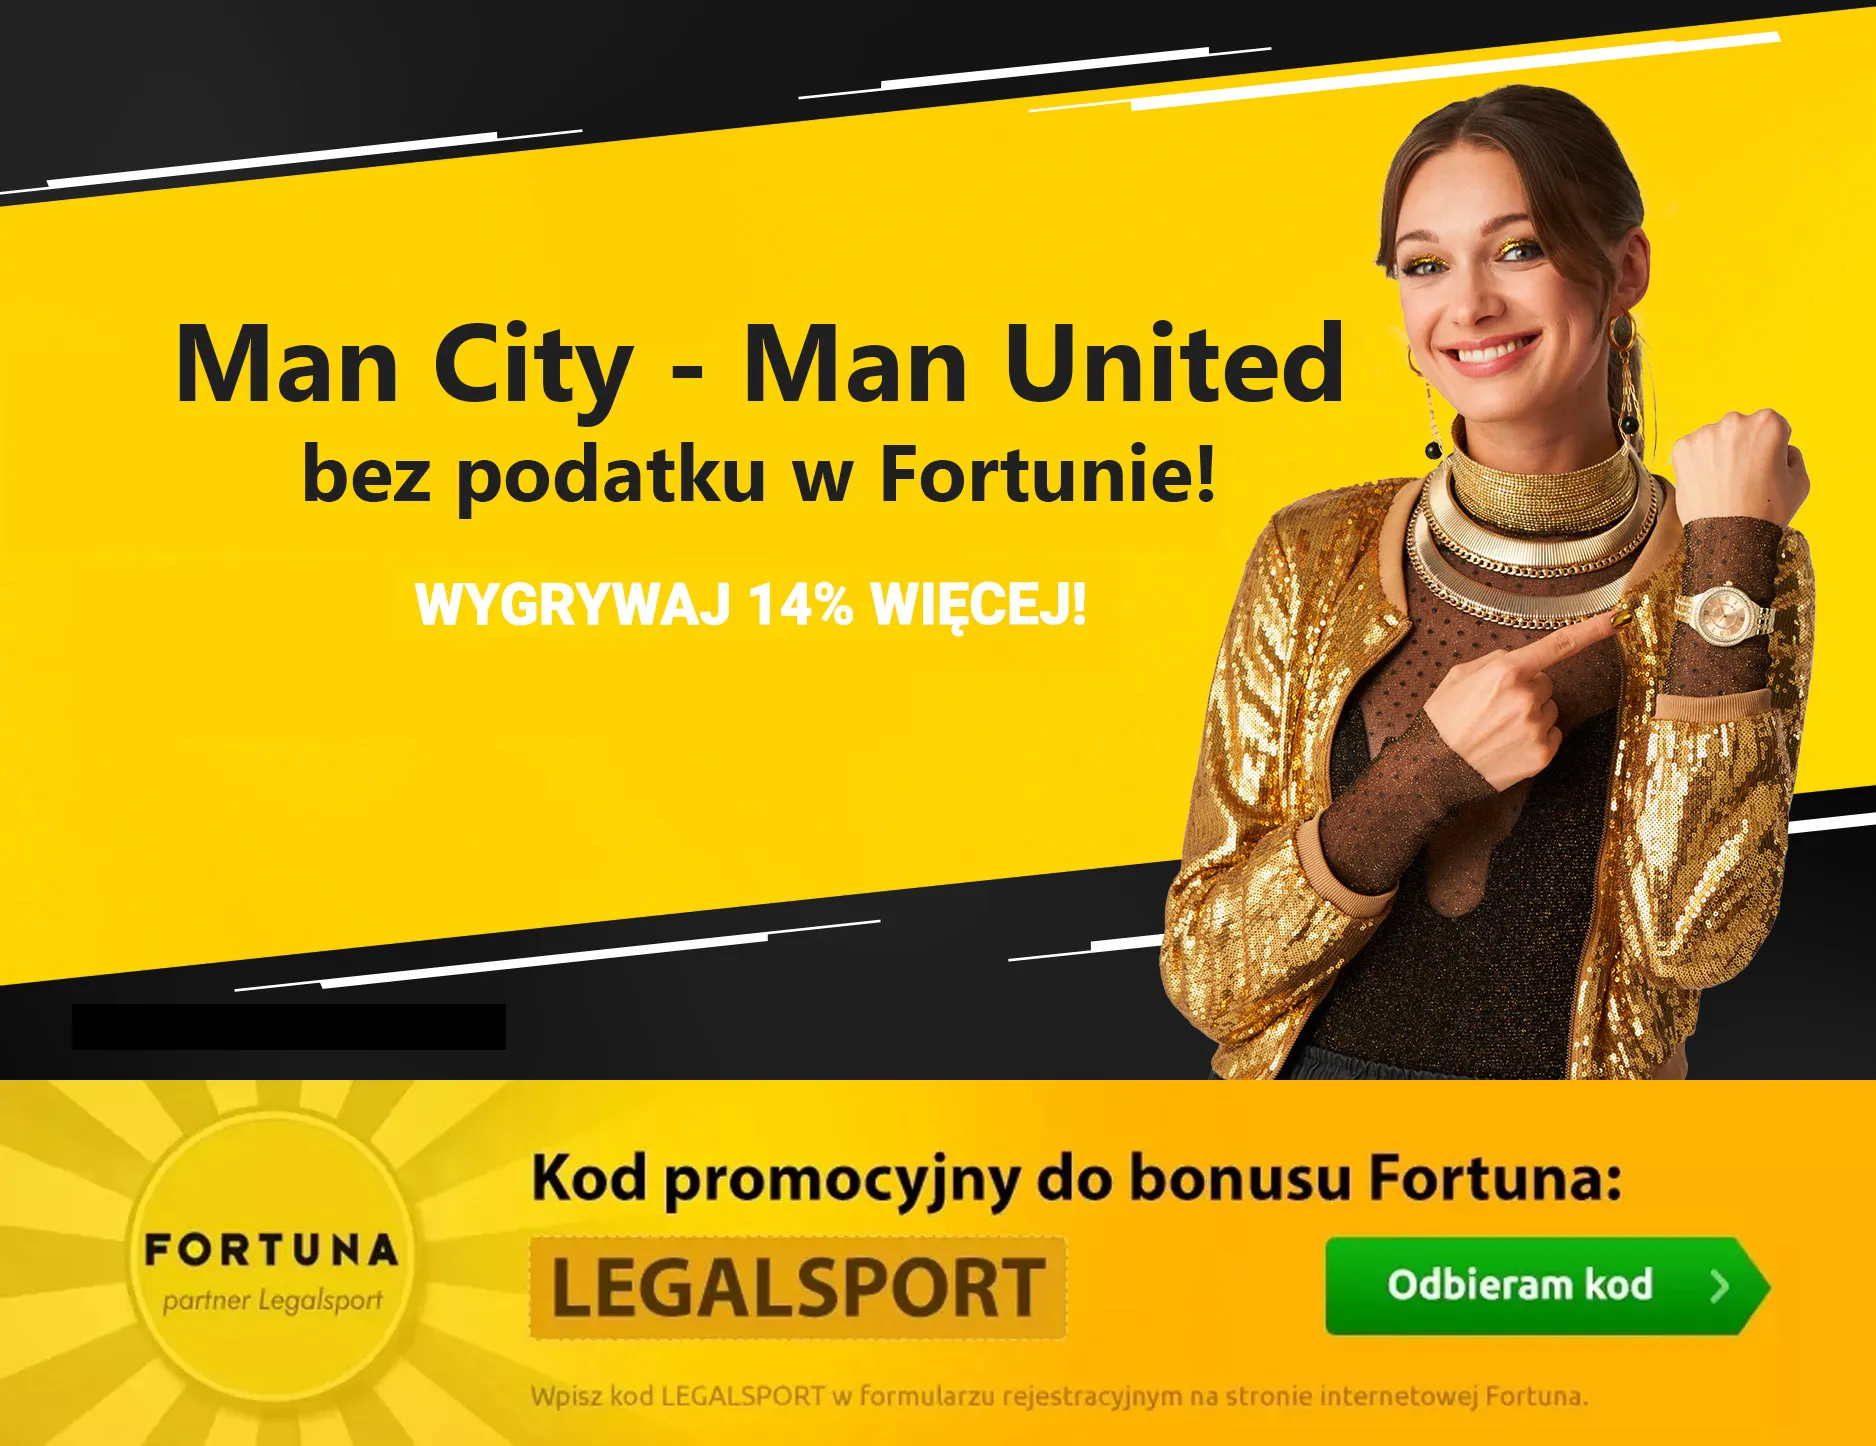 Man City - Man United bez podatku w Fortunie